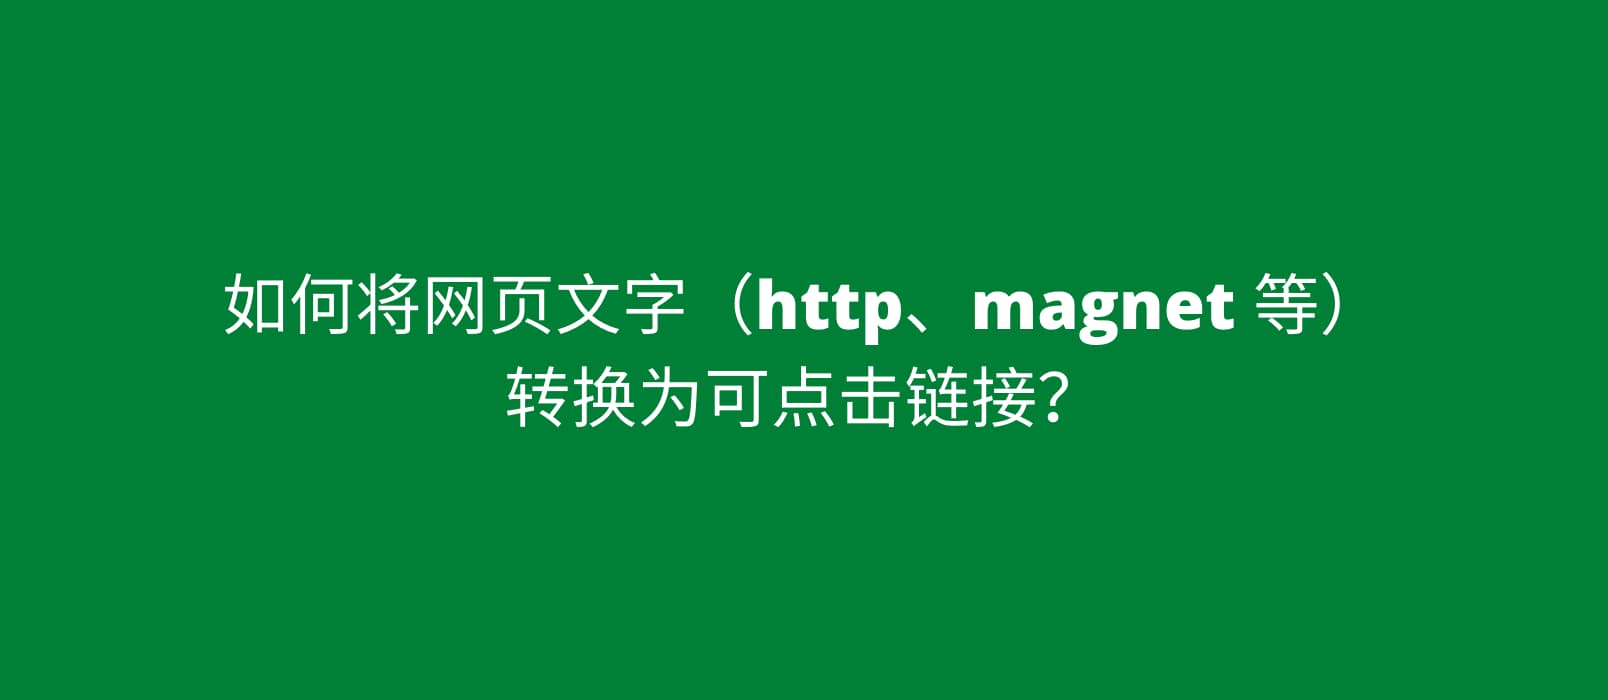 如何将带有 magnet: 的磁力链接文本转换为可点击链接？ 1